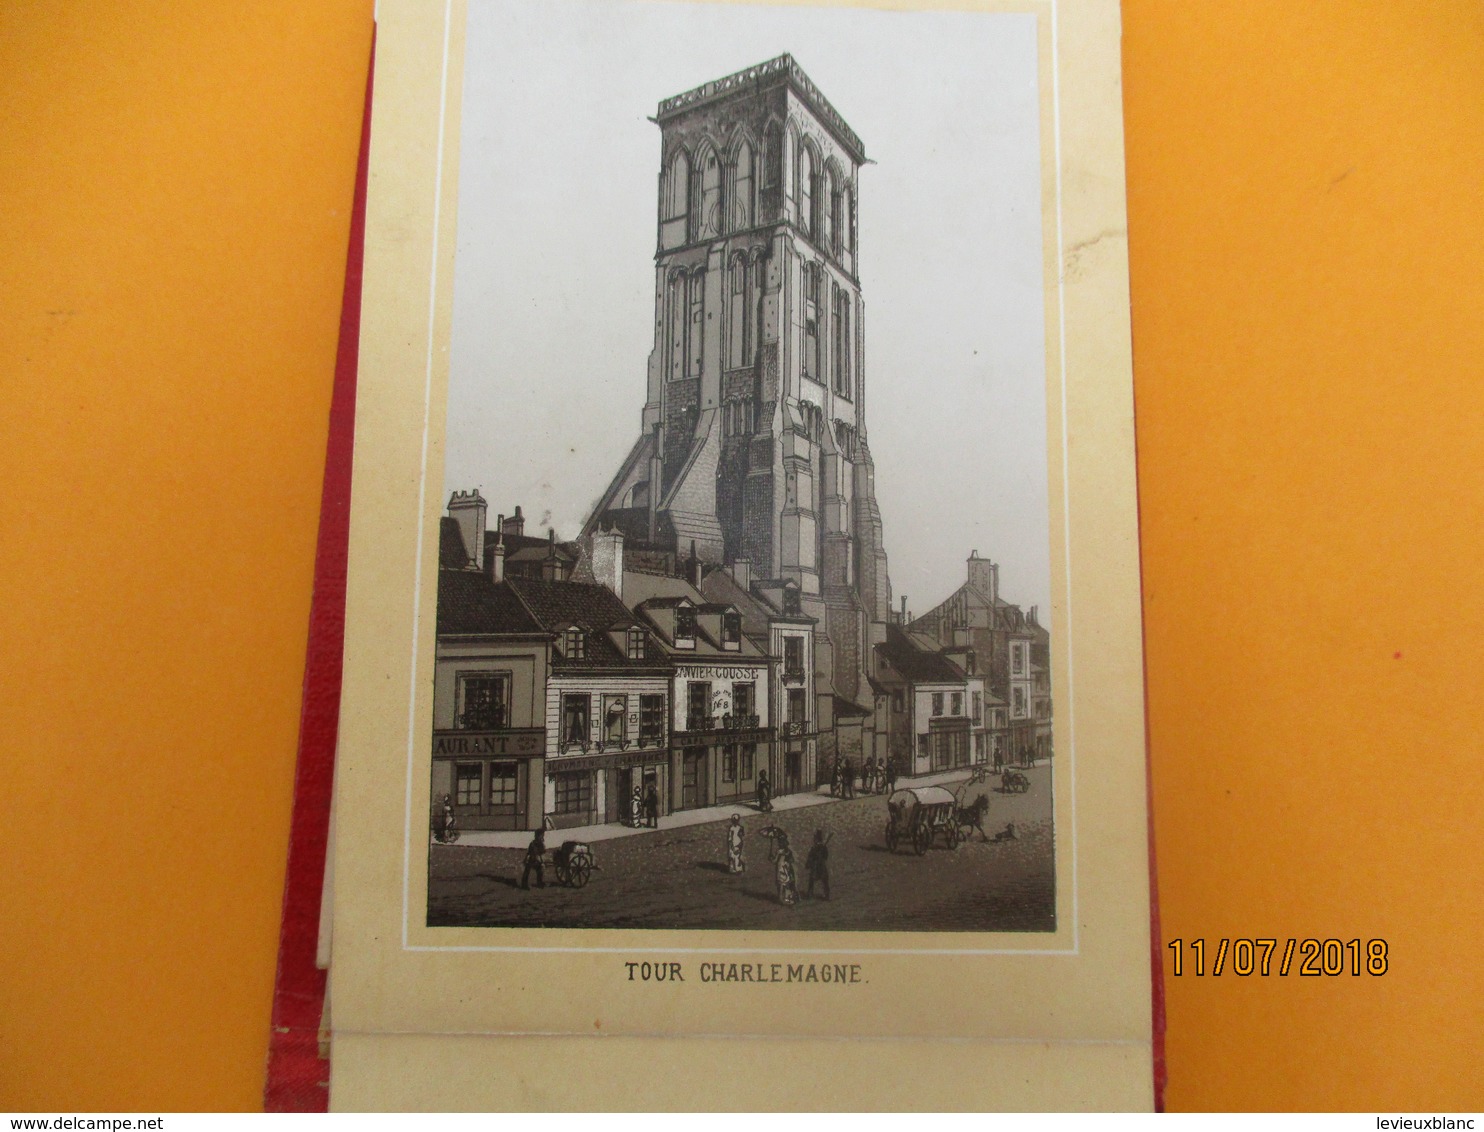 Vues de  Monuments de ville/TOURS/14 Vues /En accordéon/ Neurdein / Pinkau LEIPZIG/Vers 1880-1890         PGC237